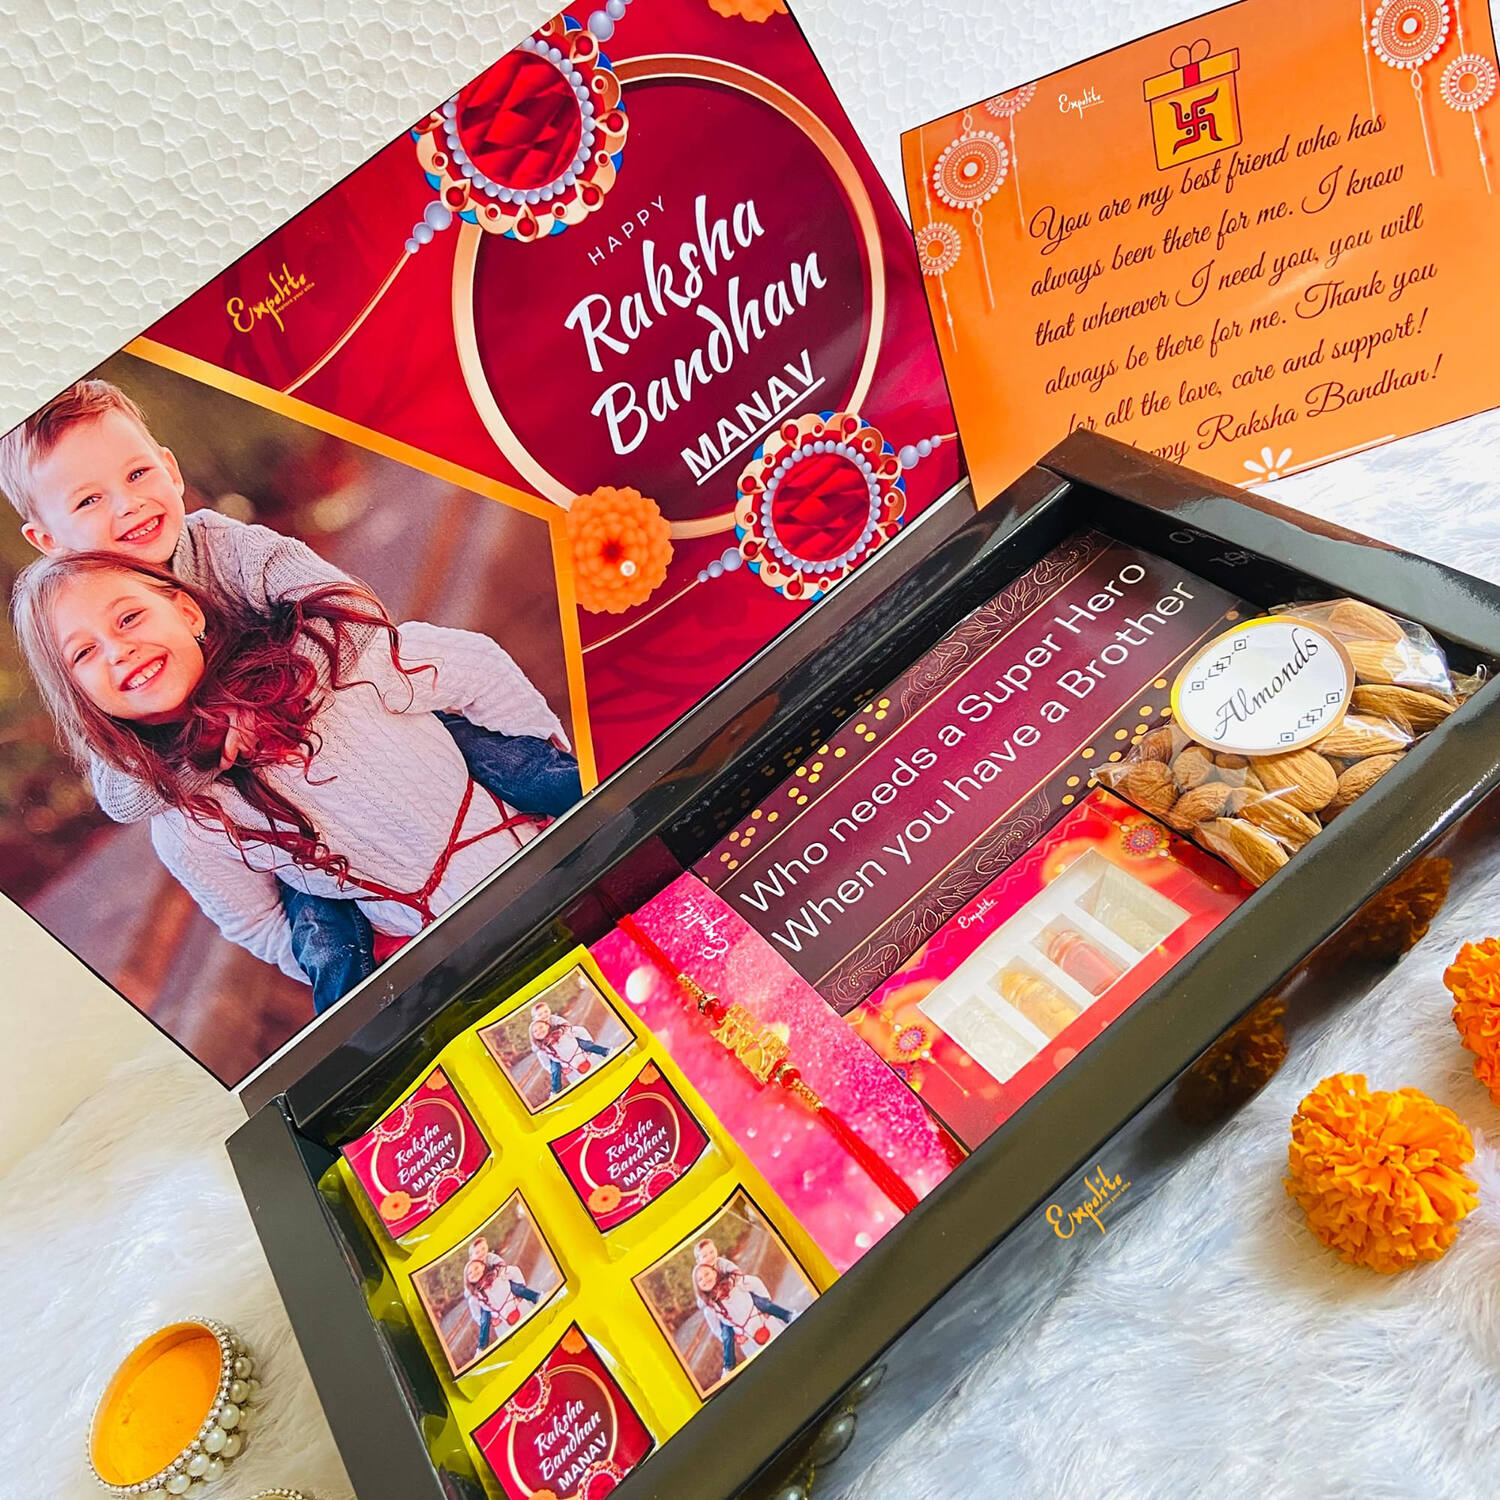 rakhi gift box | handmade gift for brother | rakhi gift ideas for brother |  diy rakhi gift ideas 🔥🔥 - YouTube